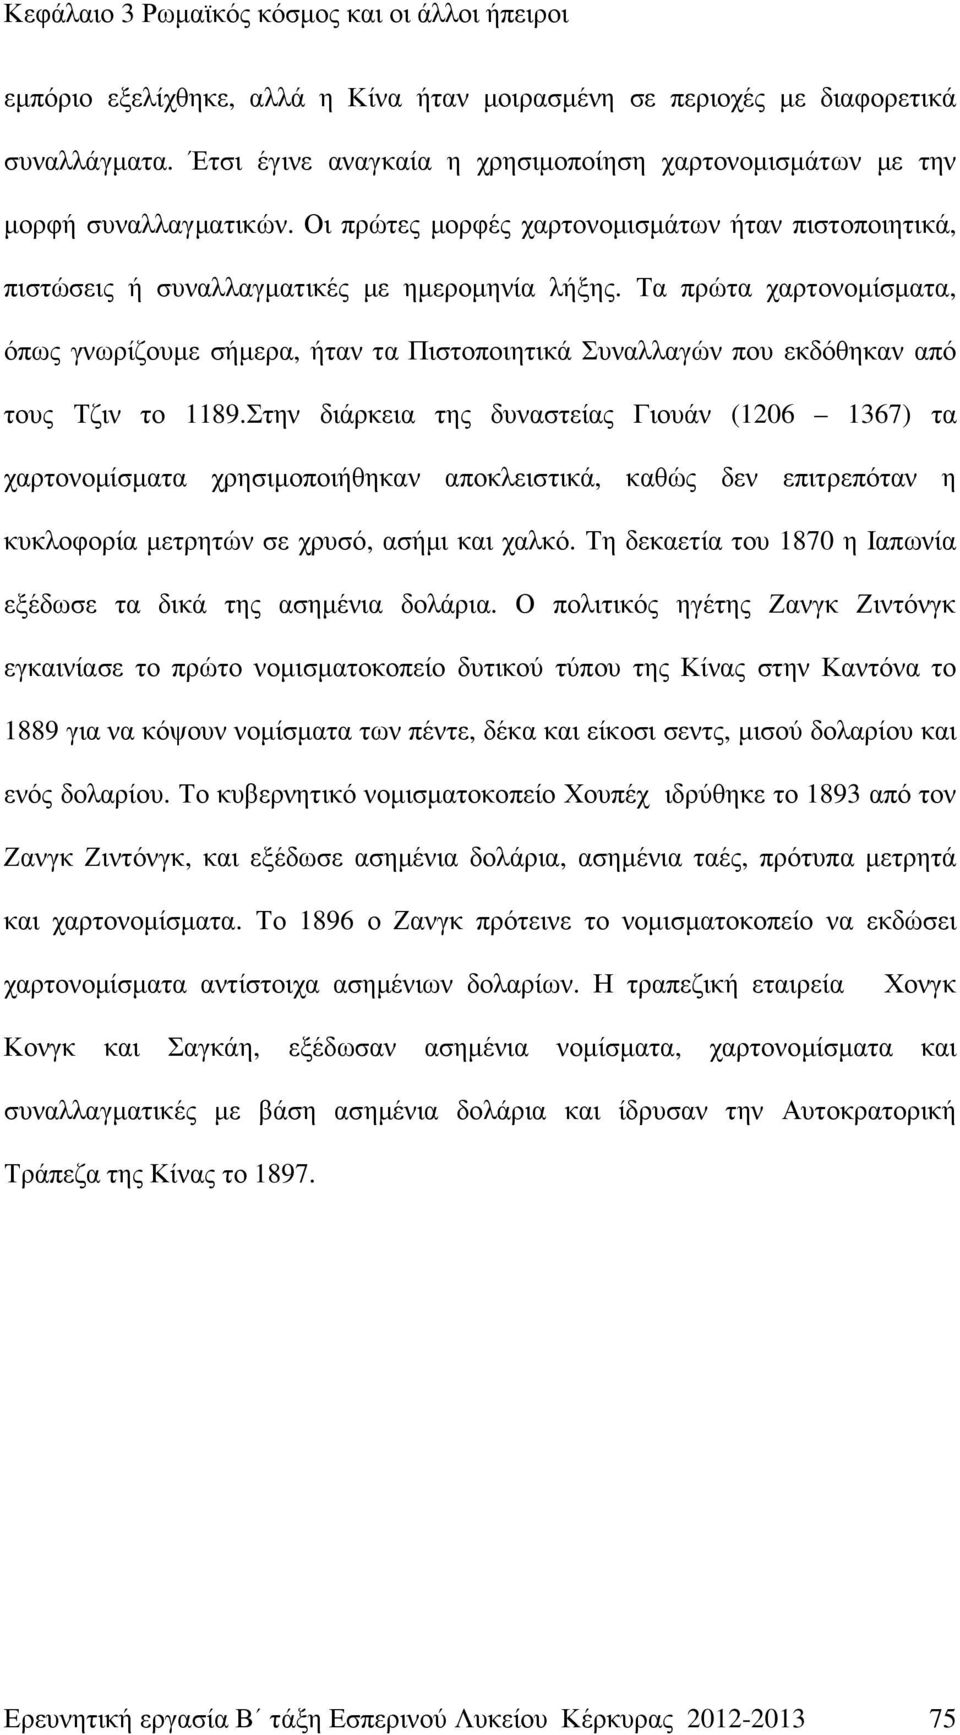 Τα πρώτα χαρτονοµίσµατα, όπως γνωρίζουµε σήµερα, ήταν τα Πιστοποιητικά Συναλλαγών που εκδόθηκαν από τους Τζιν το 1189.